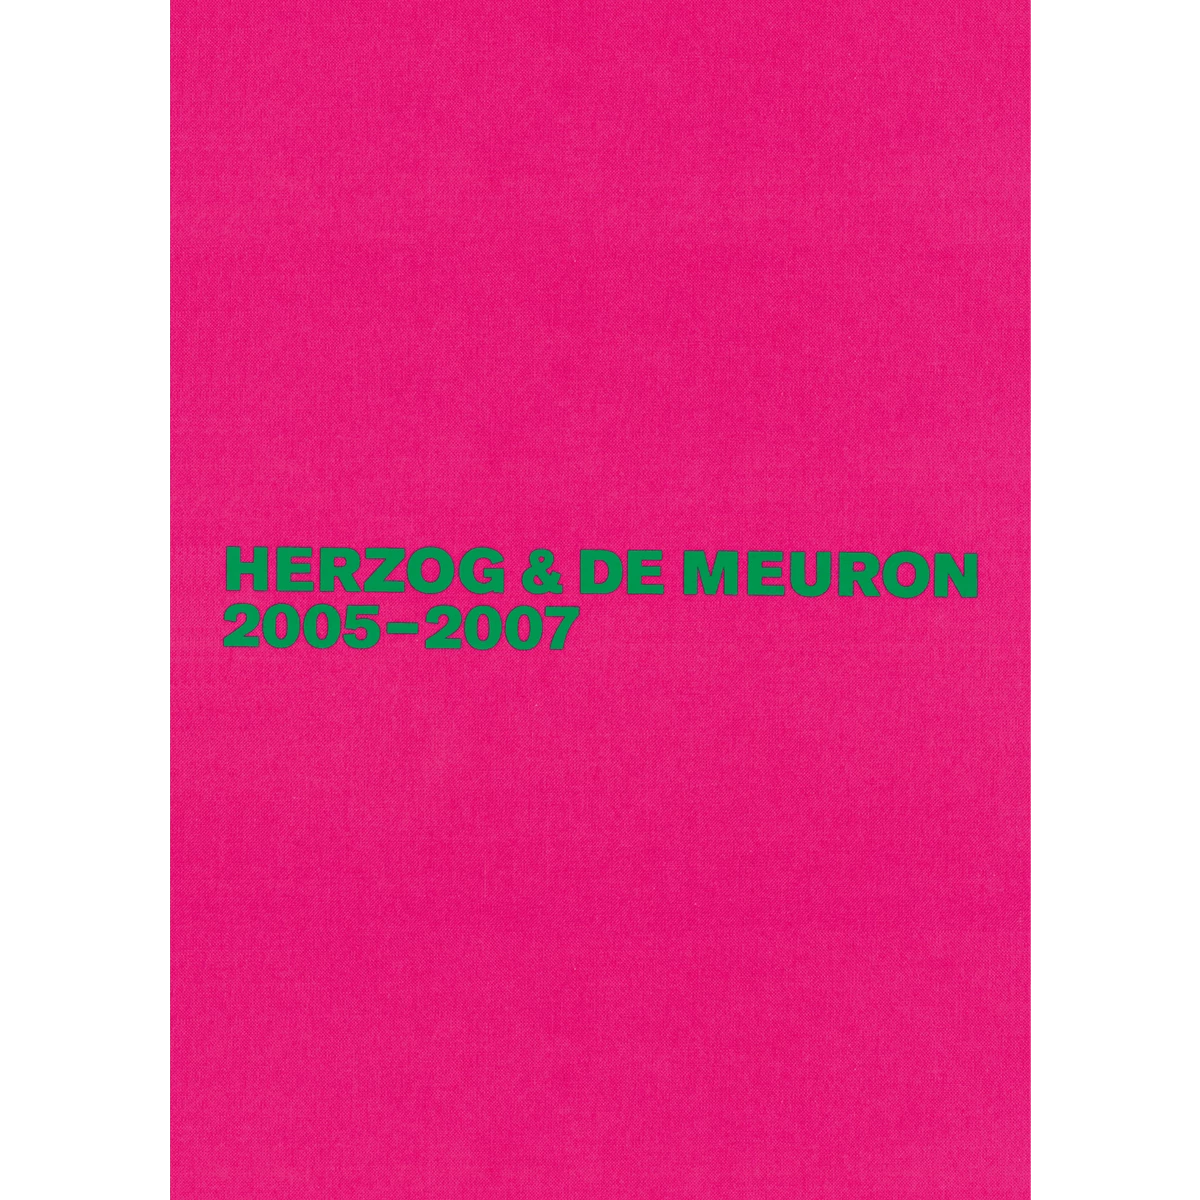 Herzog & de Meuron 2005-2007